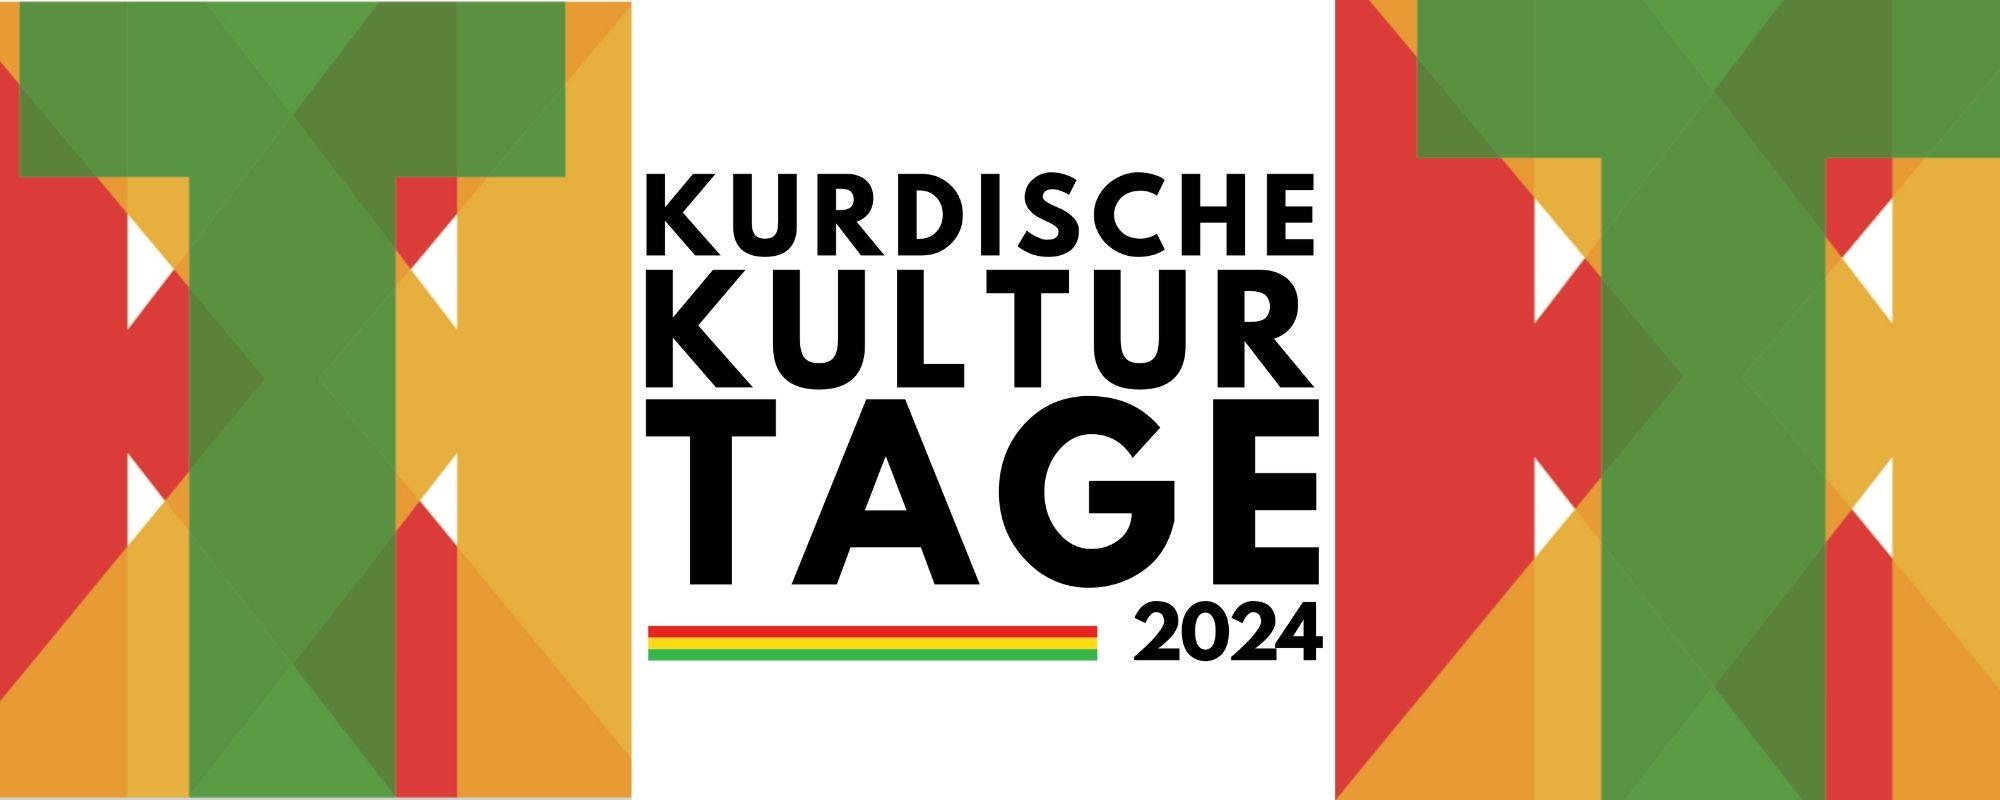 Kurdische Kulturtage